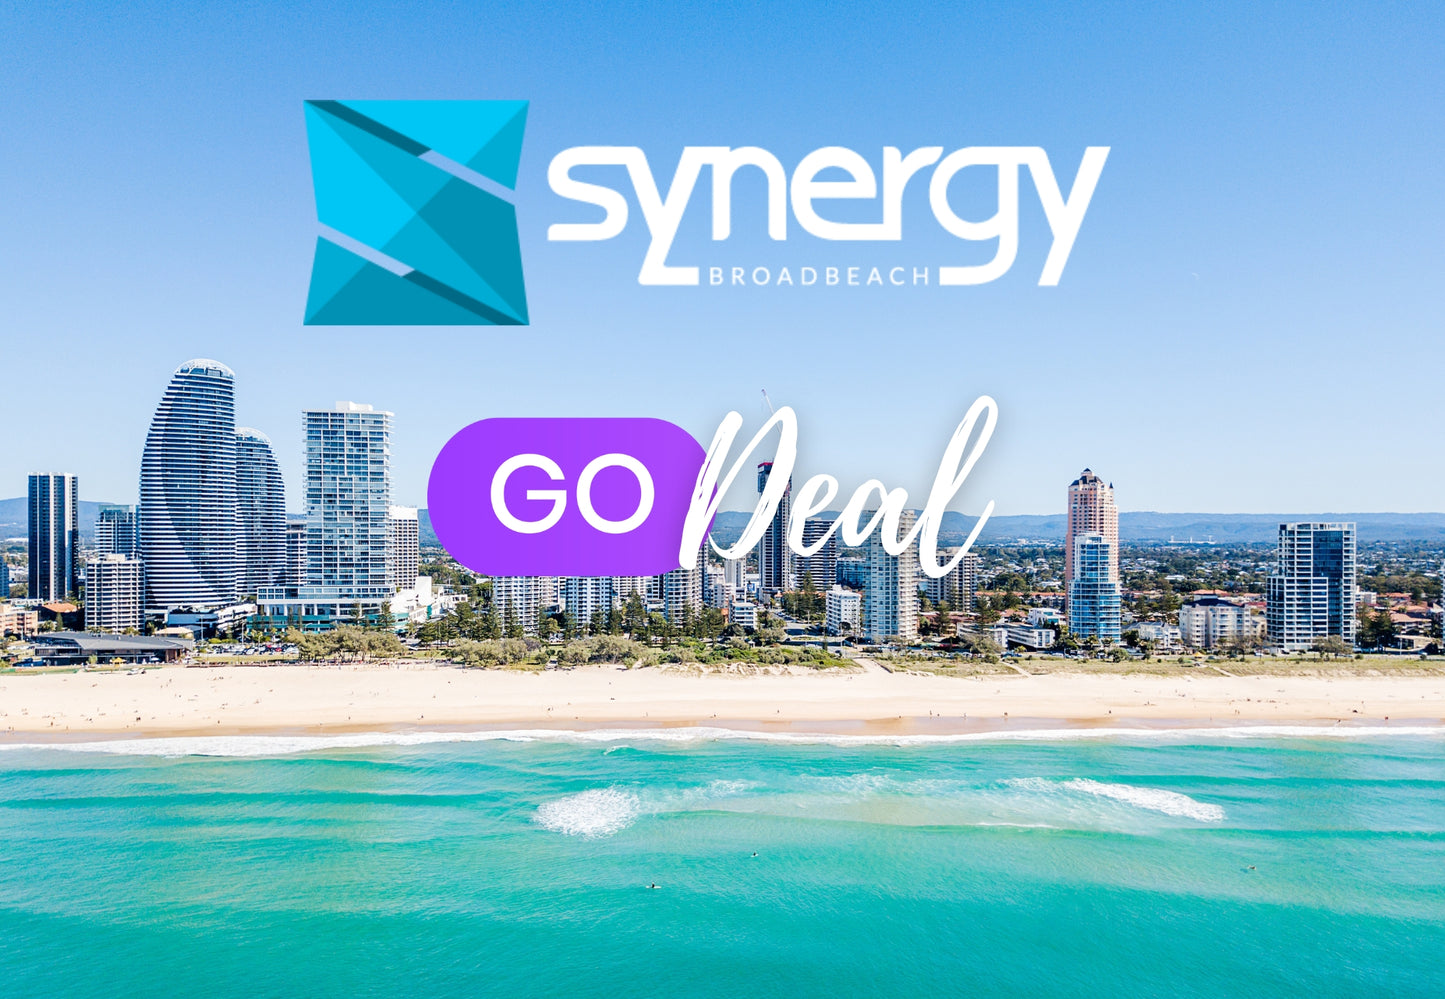 Synergy Resort Broadbeach | GO Deal Voucher | $99 Deposit